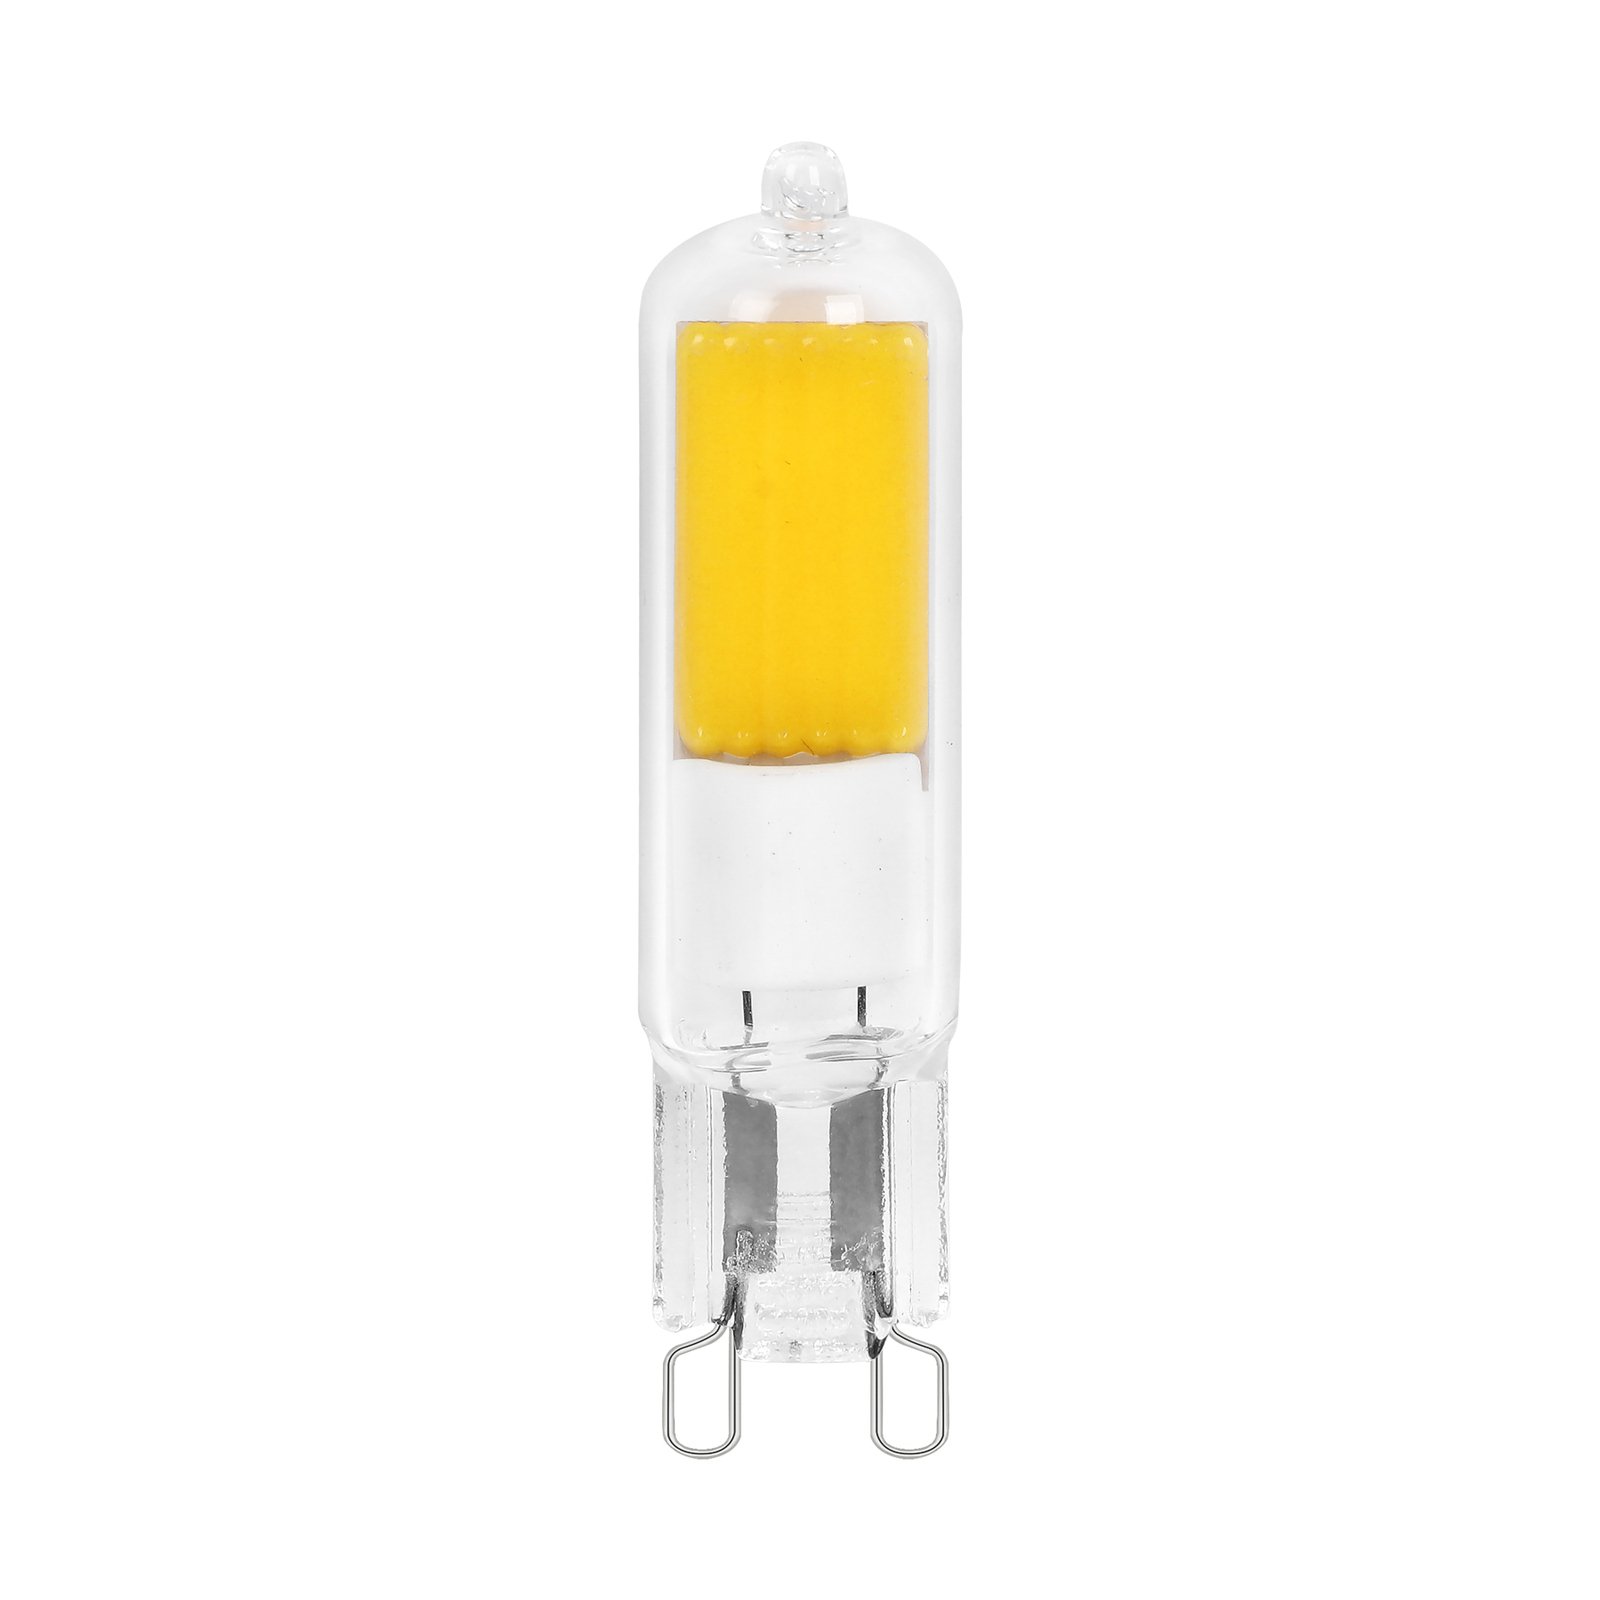 Arcchio bi-pin LED bulb, G9, 4W, 3000K, set of 5